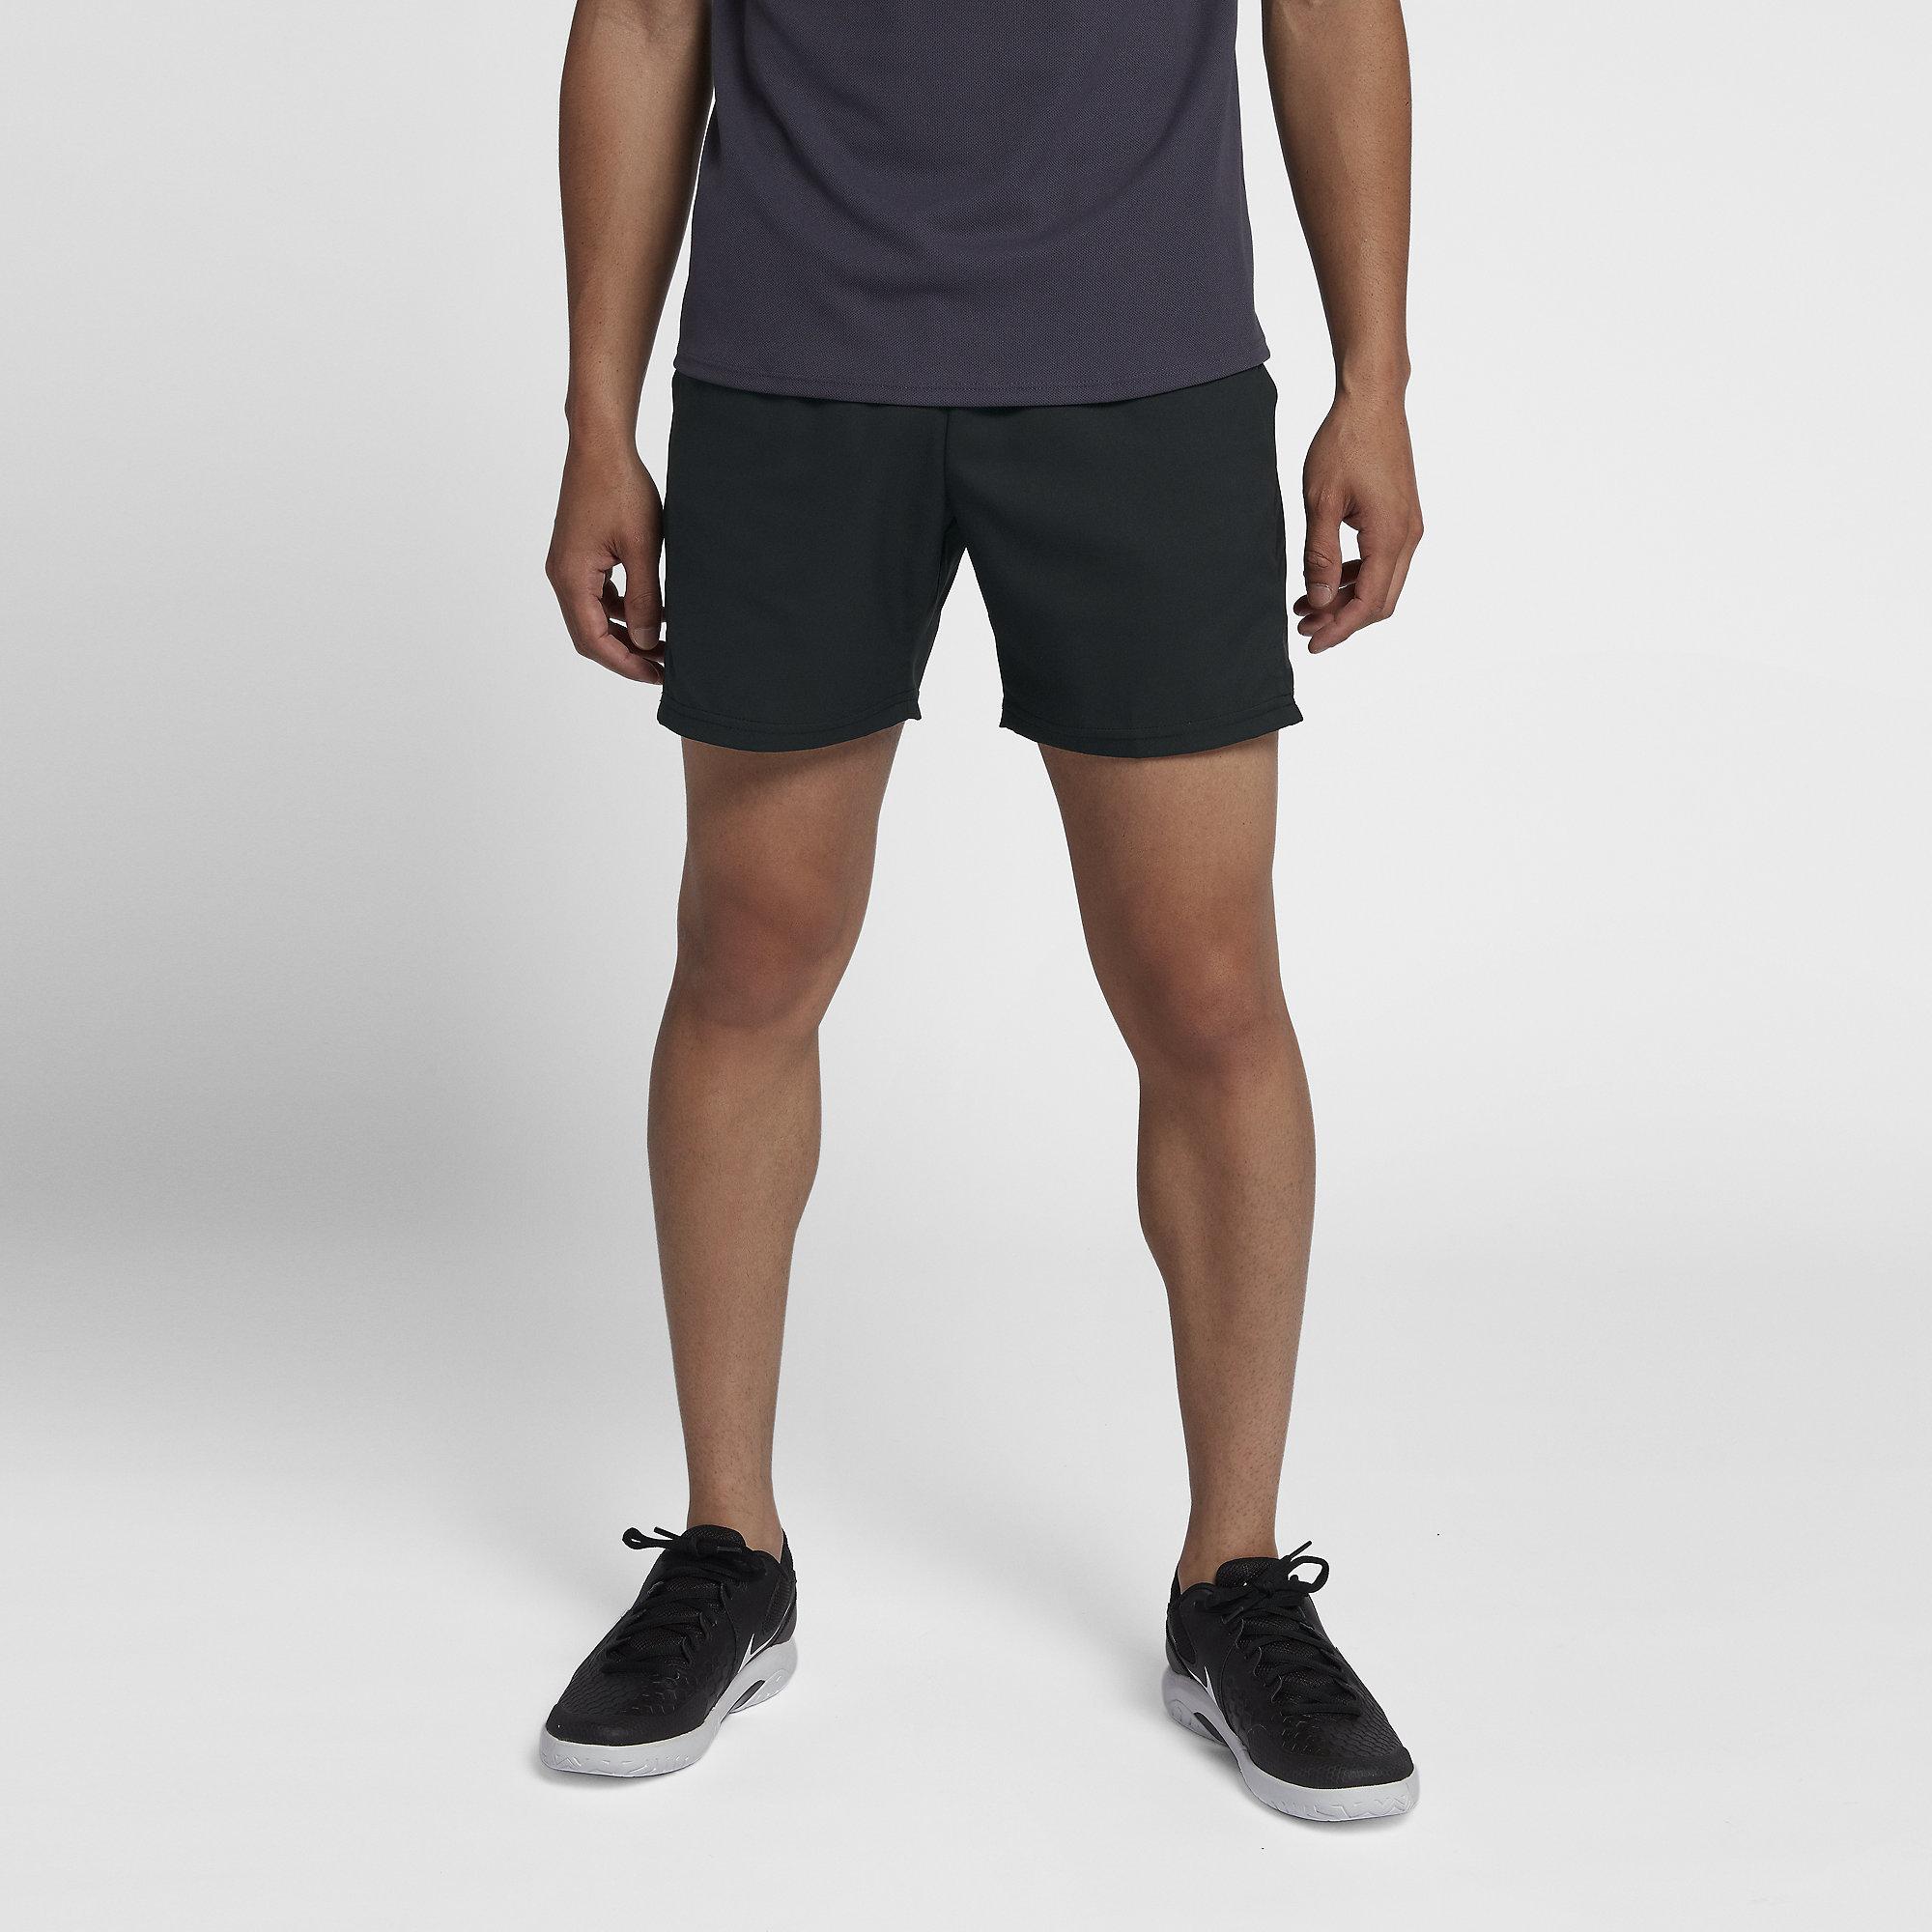 Nike Mens Dri-FIT 7 Inch Tennis Shorts - Black - Tennisnuts.com